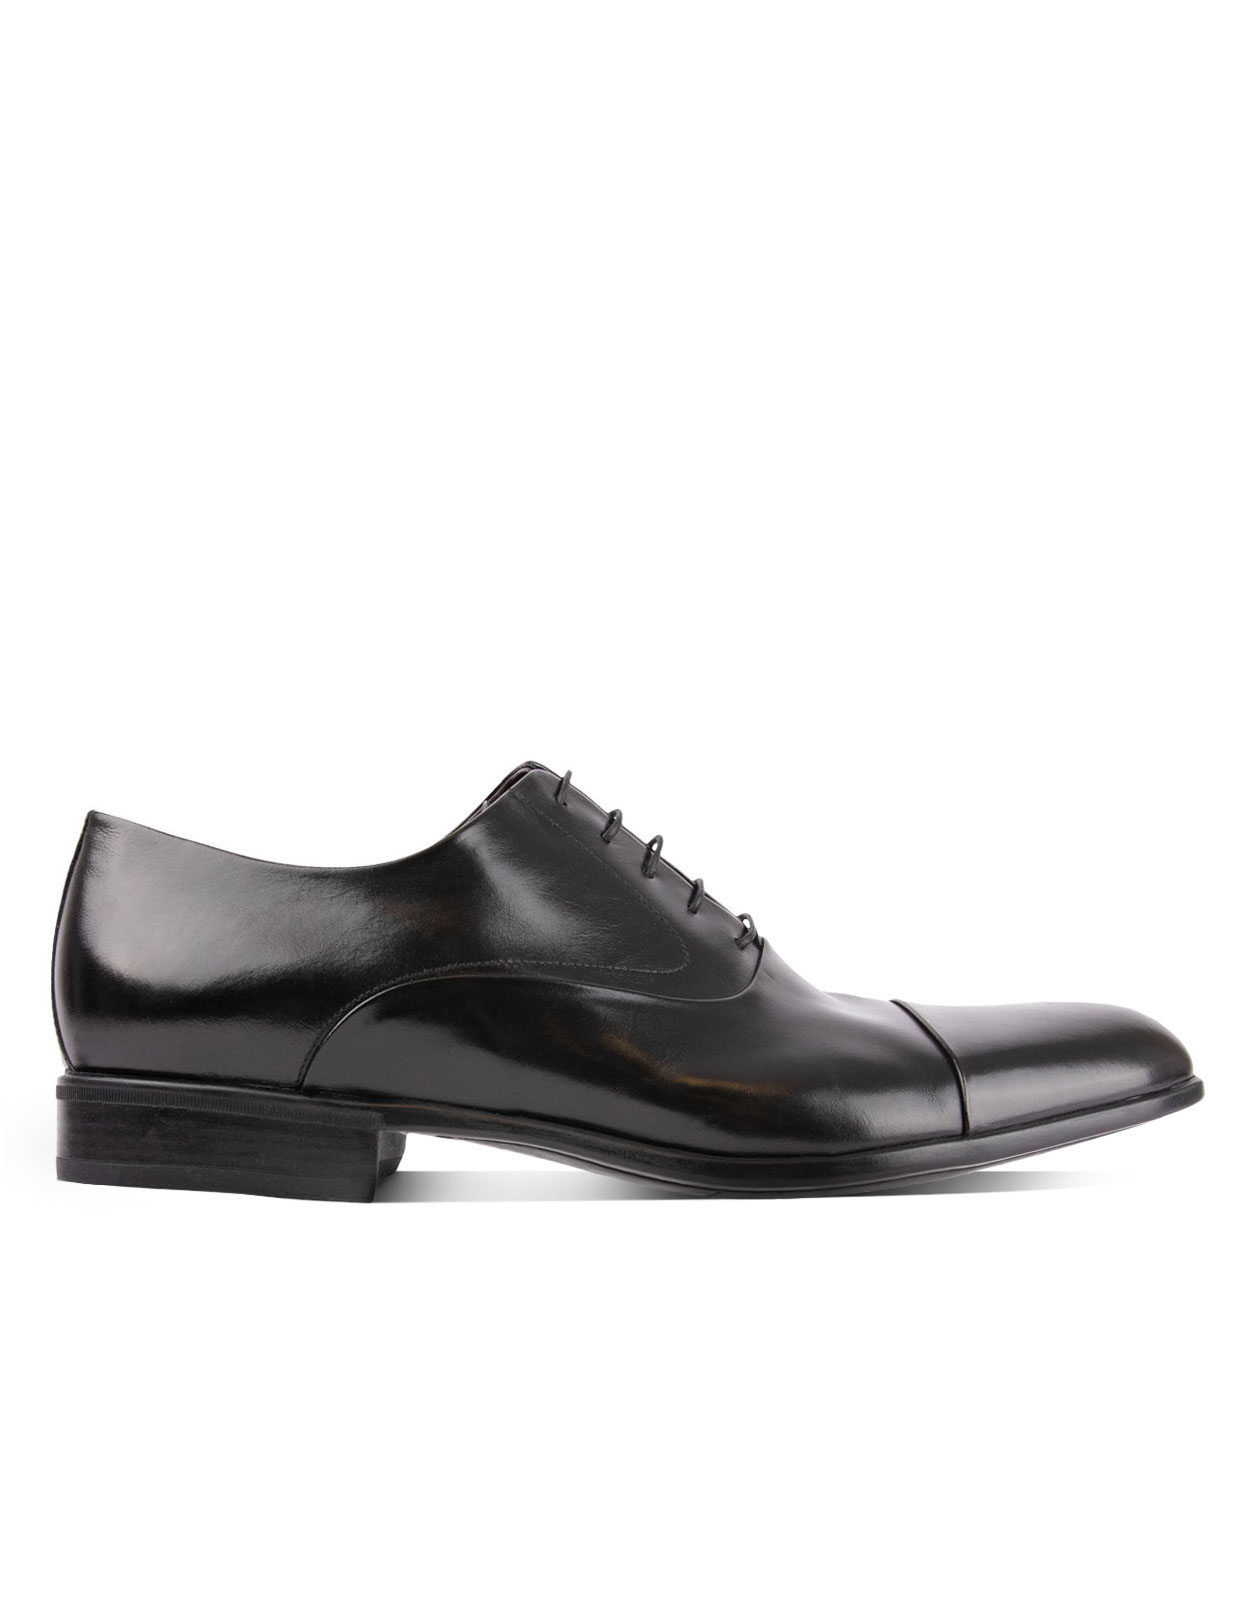 Bruges Oxford Shoe Black Stl 12